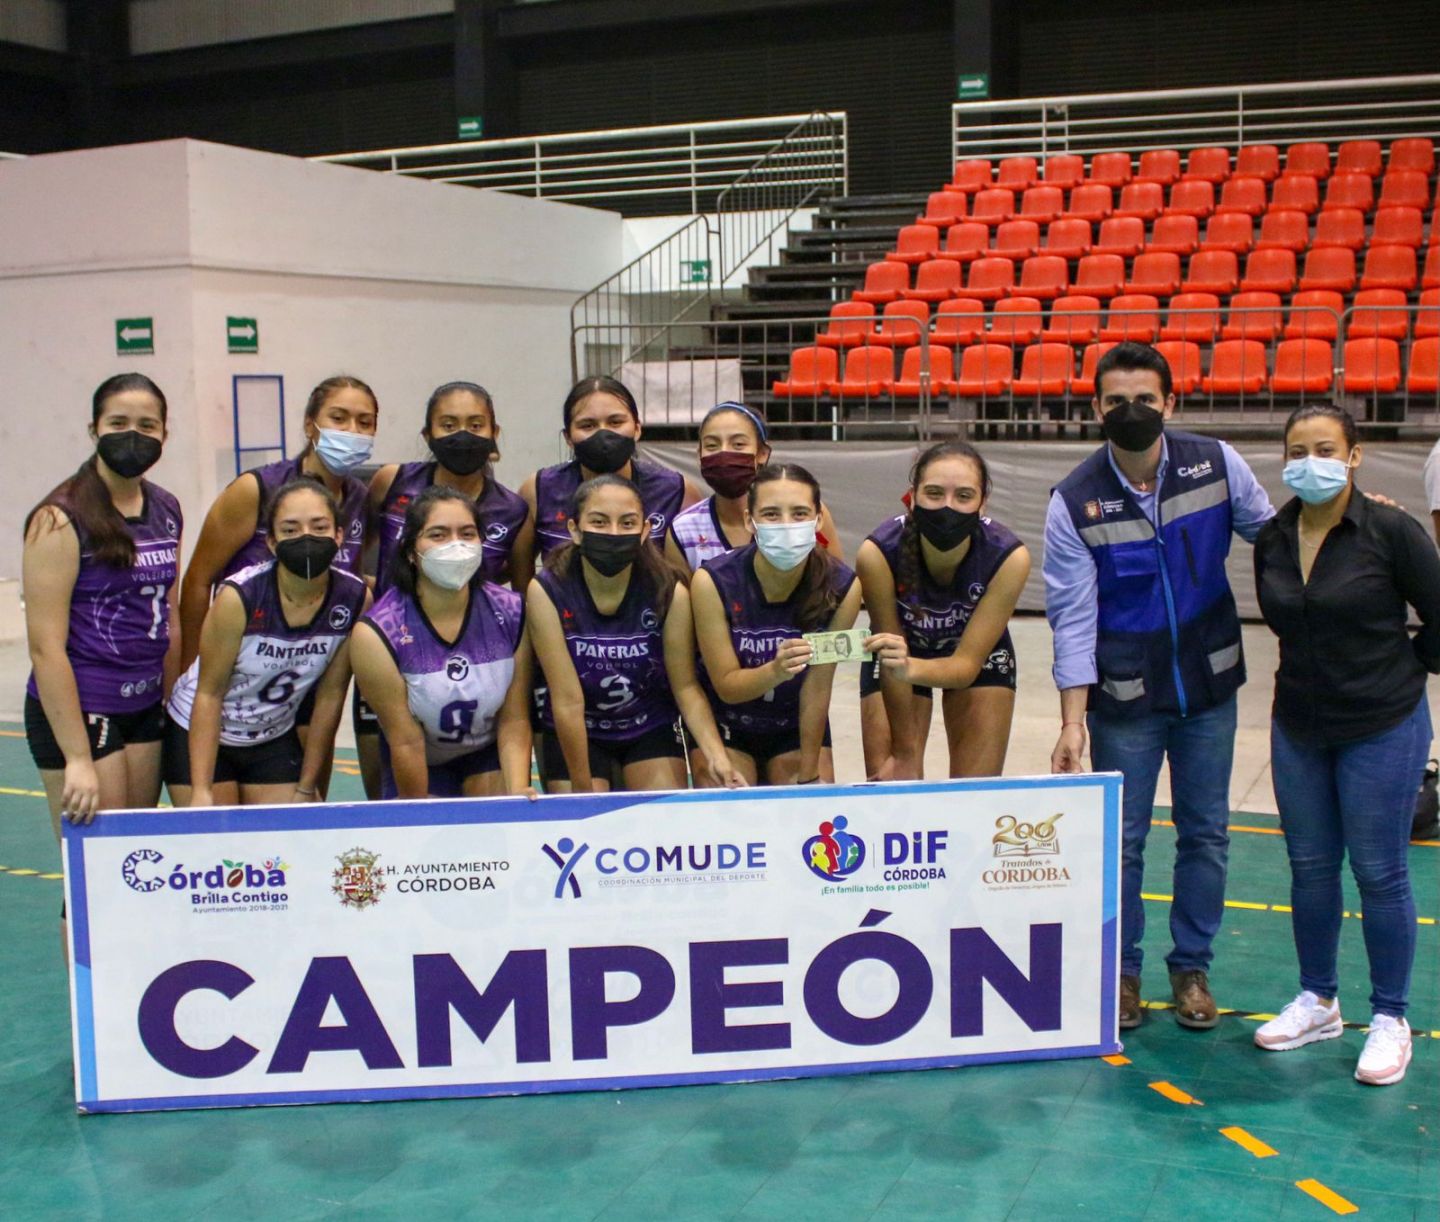 Panteras Moradas y Onlyfans, campeones del Torneo Municipal de Voleibol de Córdoba